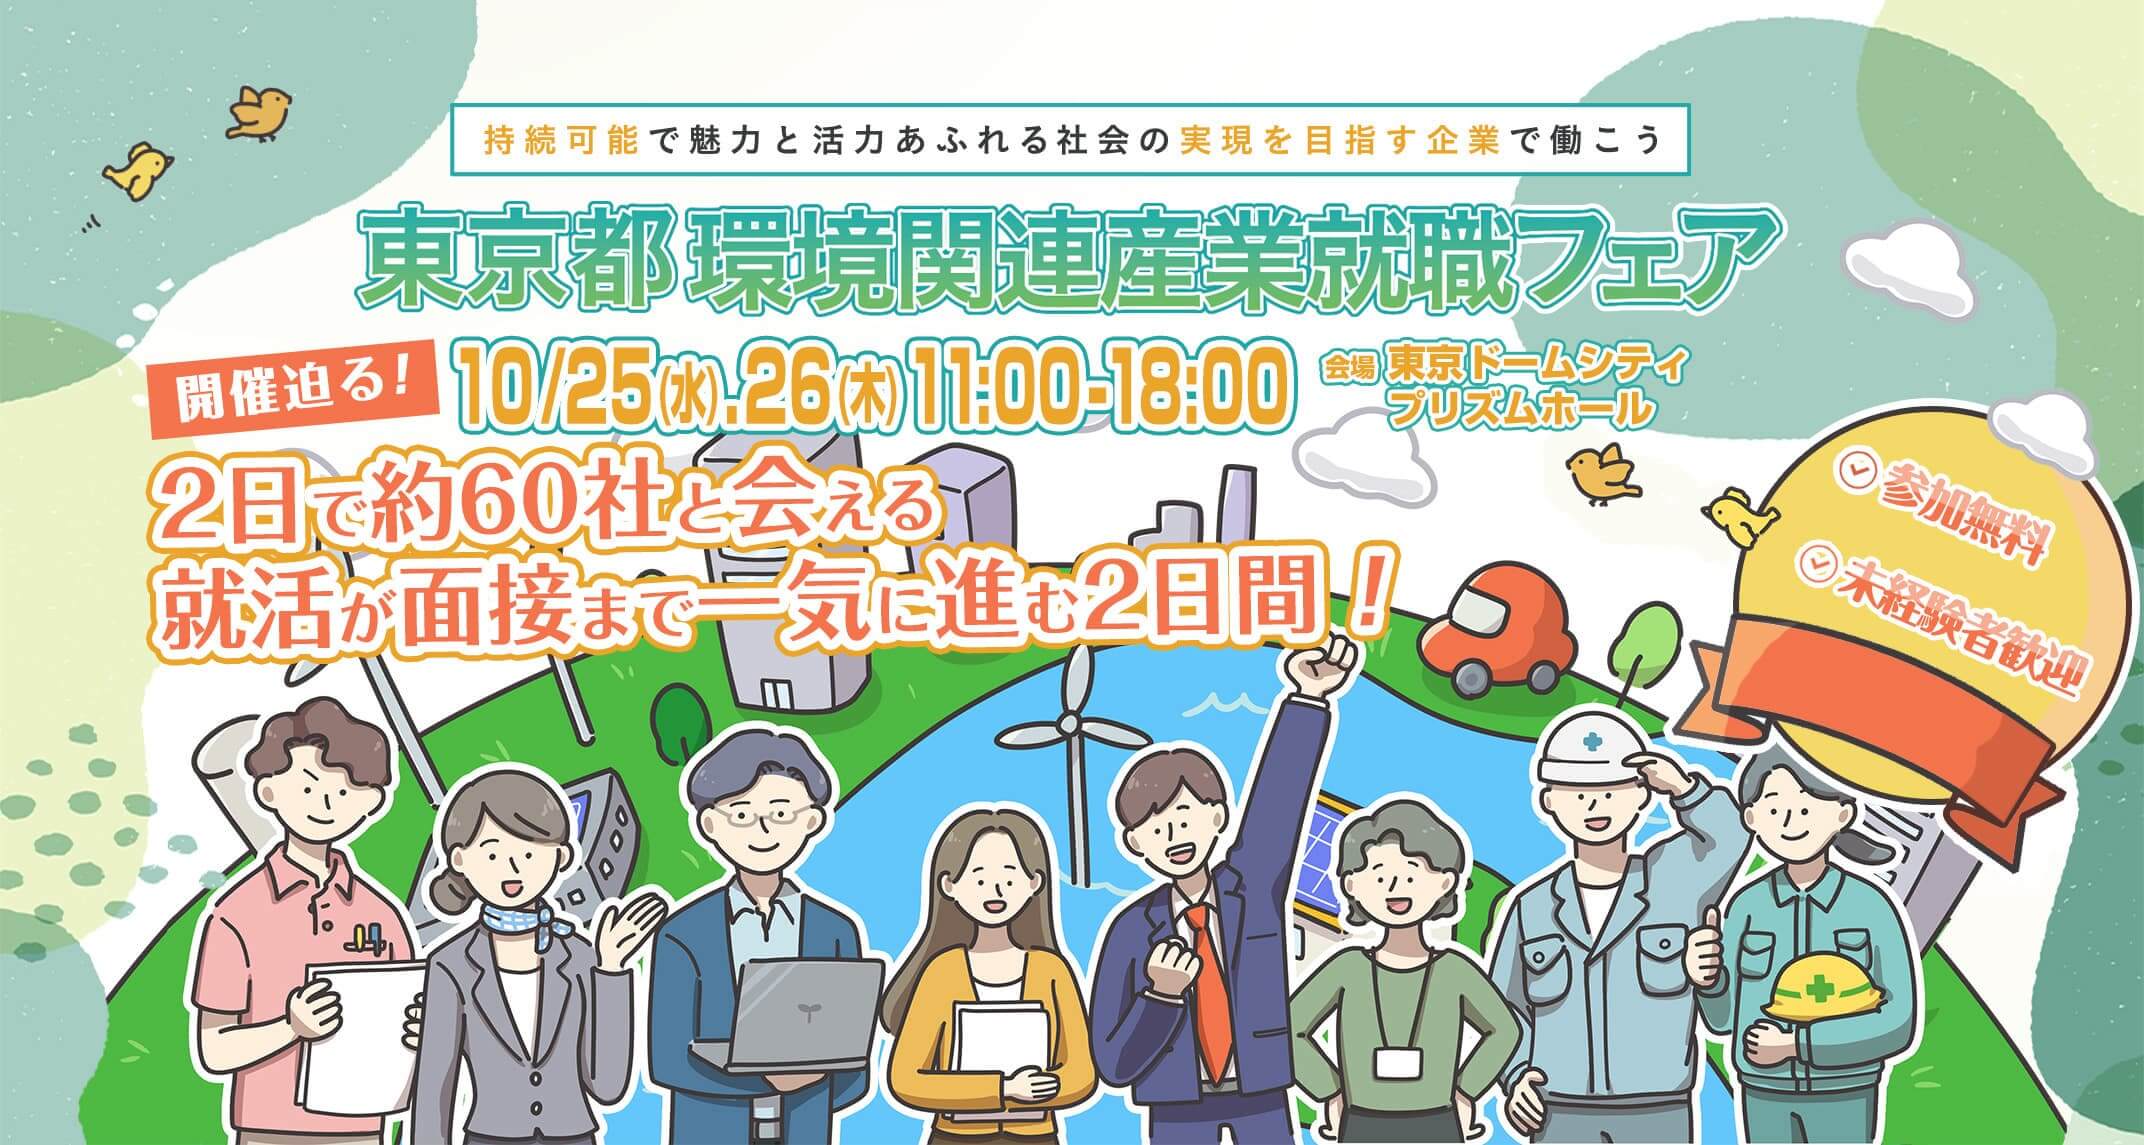 東京都環境関連産業就職フェア 10/25（水)、26（木） 11:00〜18:00 会場:東京ドームシティ プリズムホール